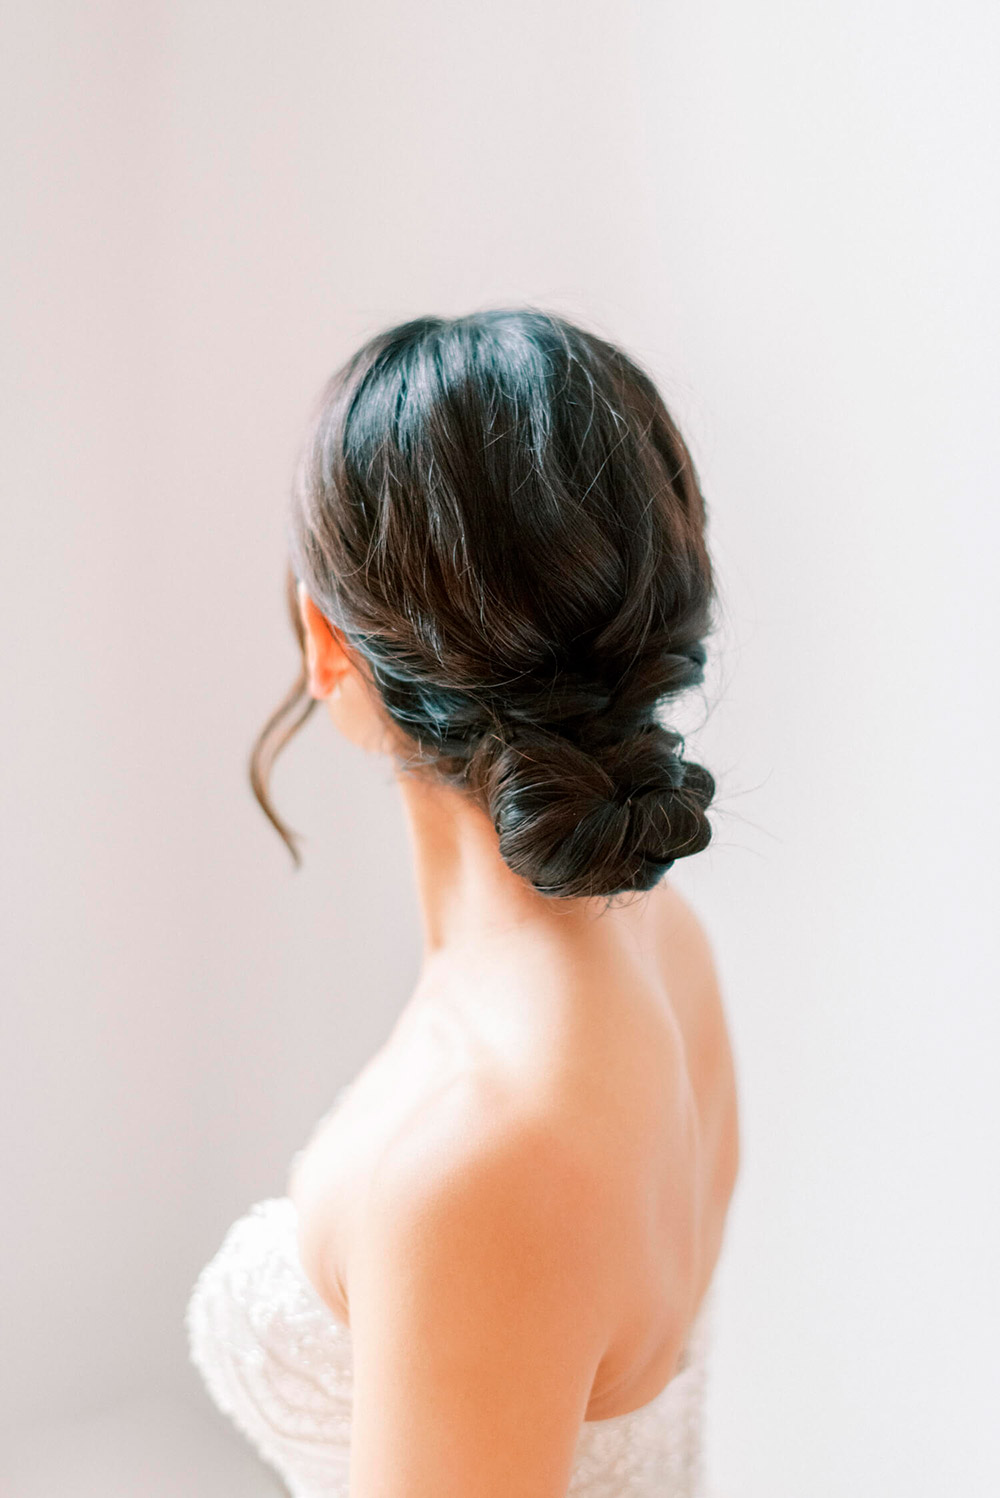 Peinados para novias de pelo largo las alternativas más originales